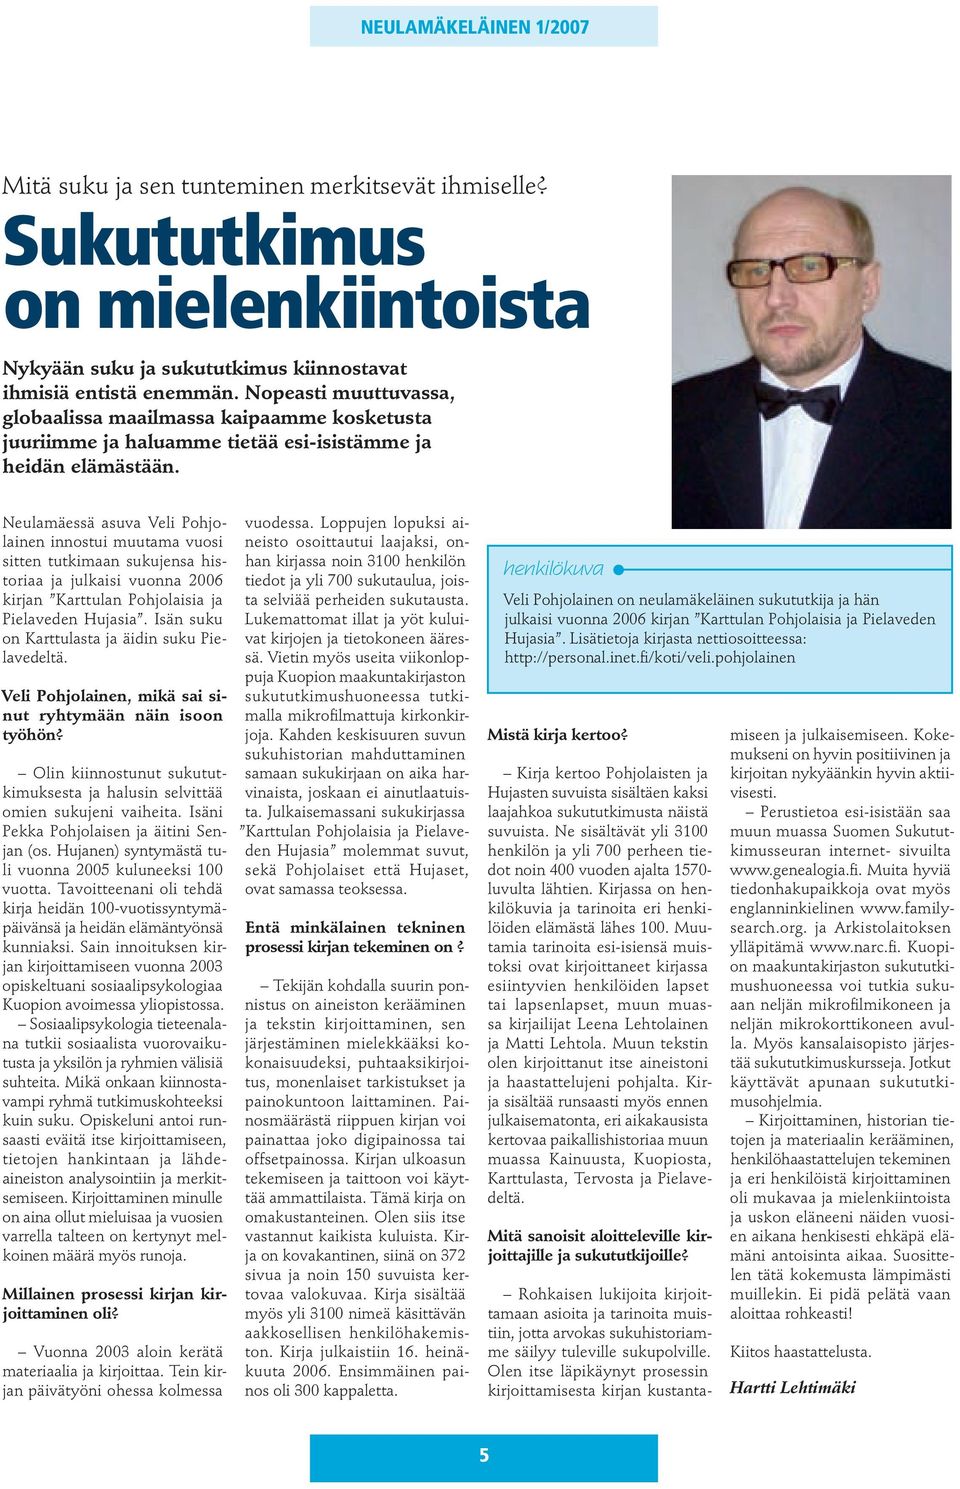 Neulamäessä asuva Veli Pohjolainen innostui muutama vuosi sitten tutkimaan sukujensa historiaa ja julkaisi vuonna 2006 kirjan Karttulan Pohjolaisia ja Pielaveden Hujasia.